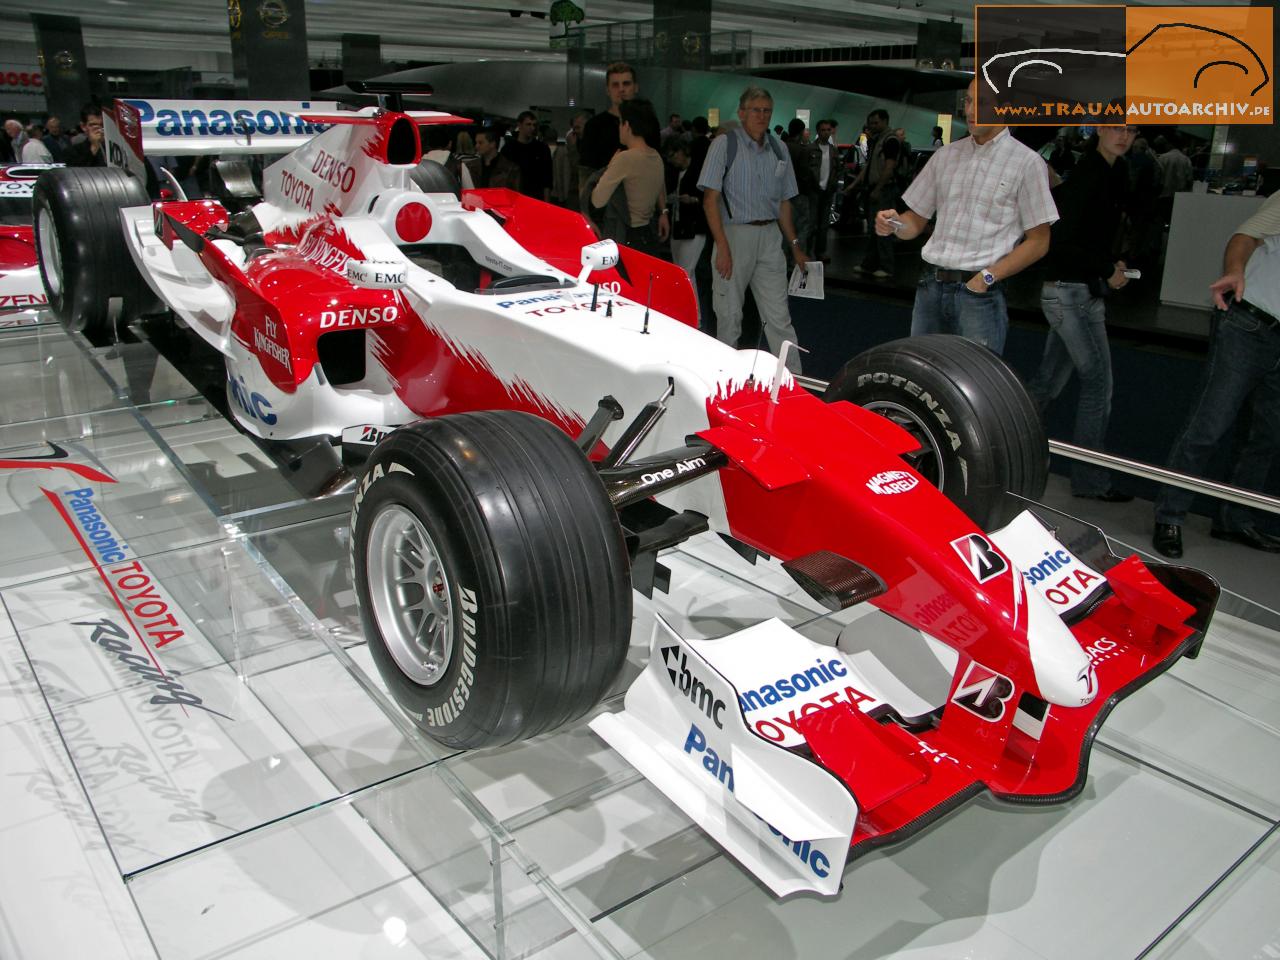 XF1_Toyota Formel 1 (1).jpg 178.5K